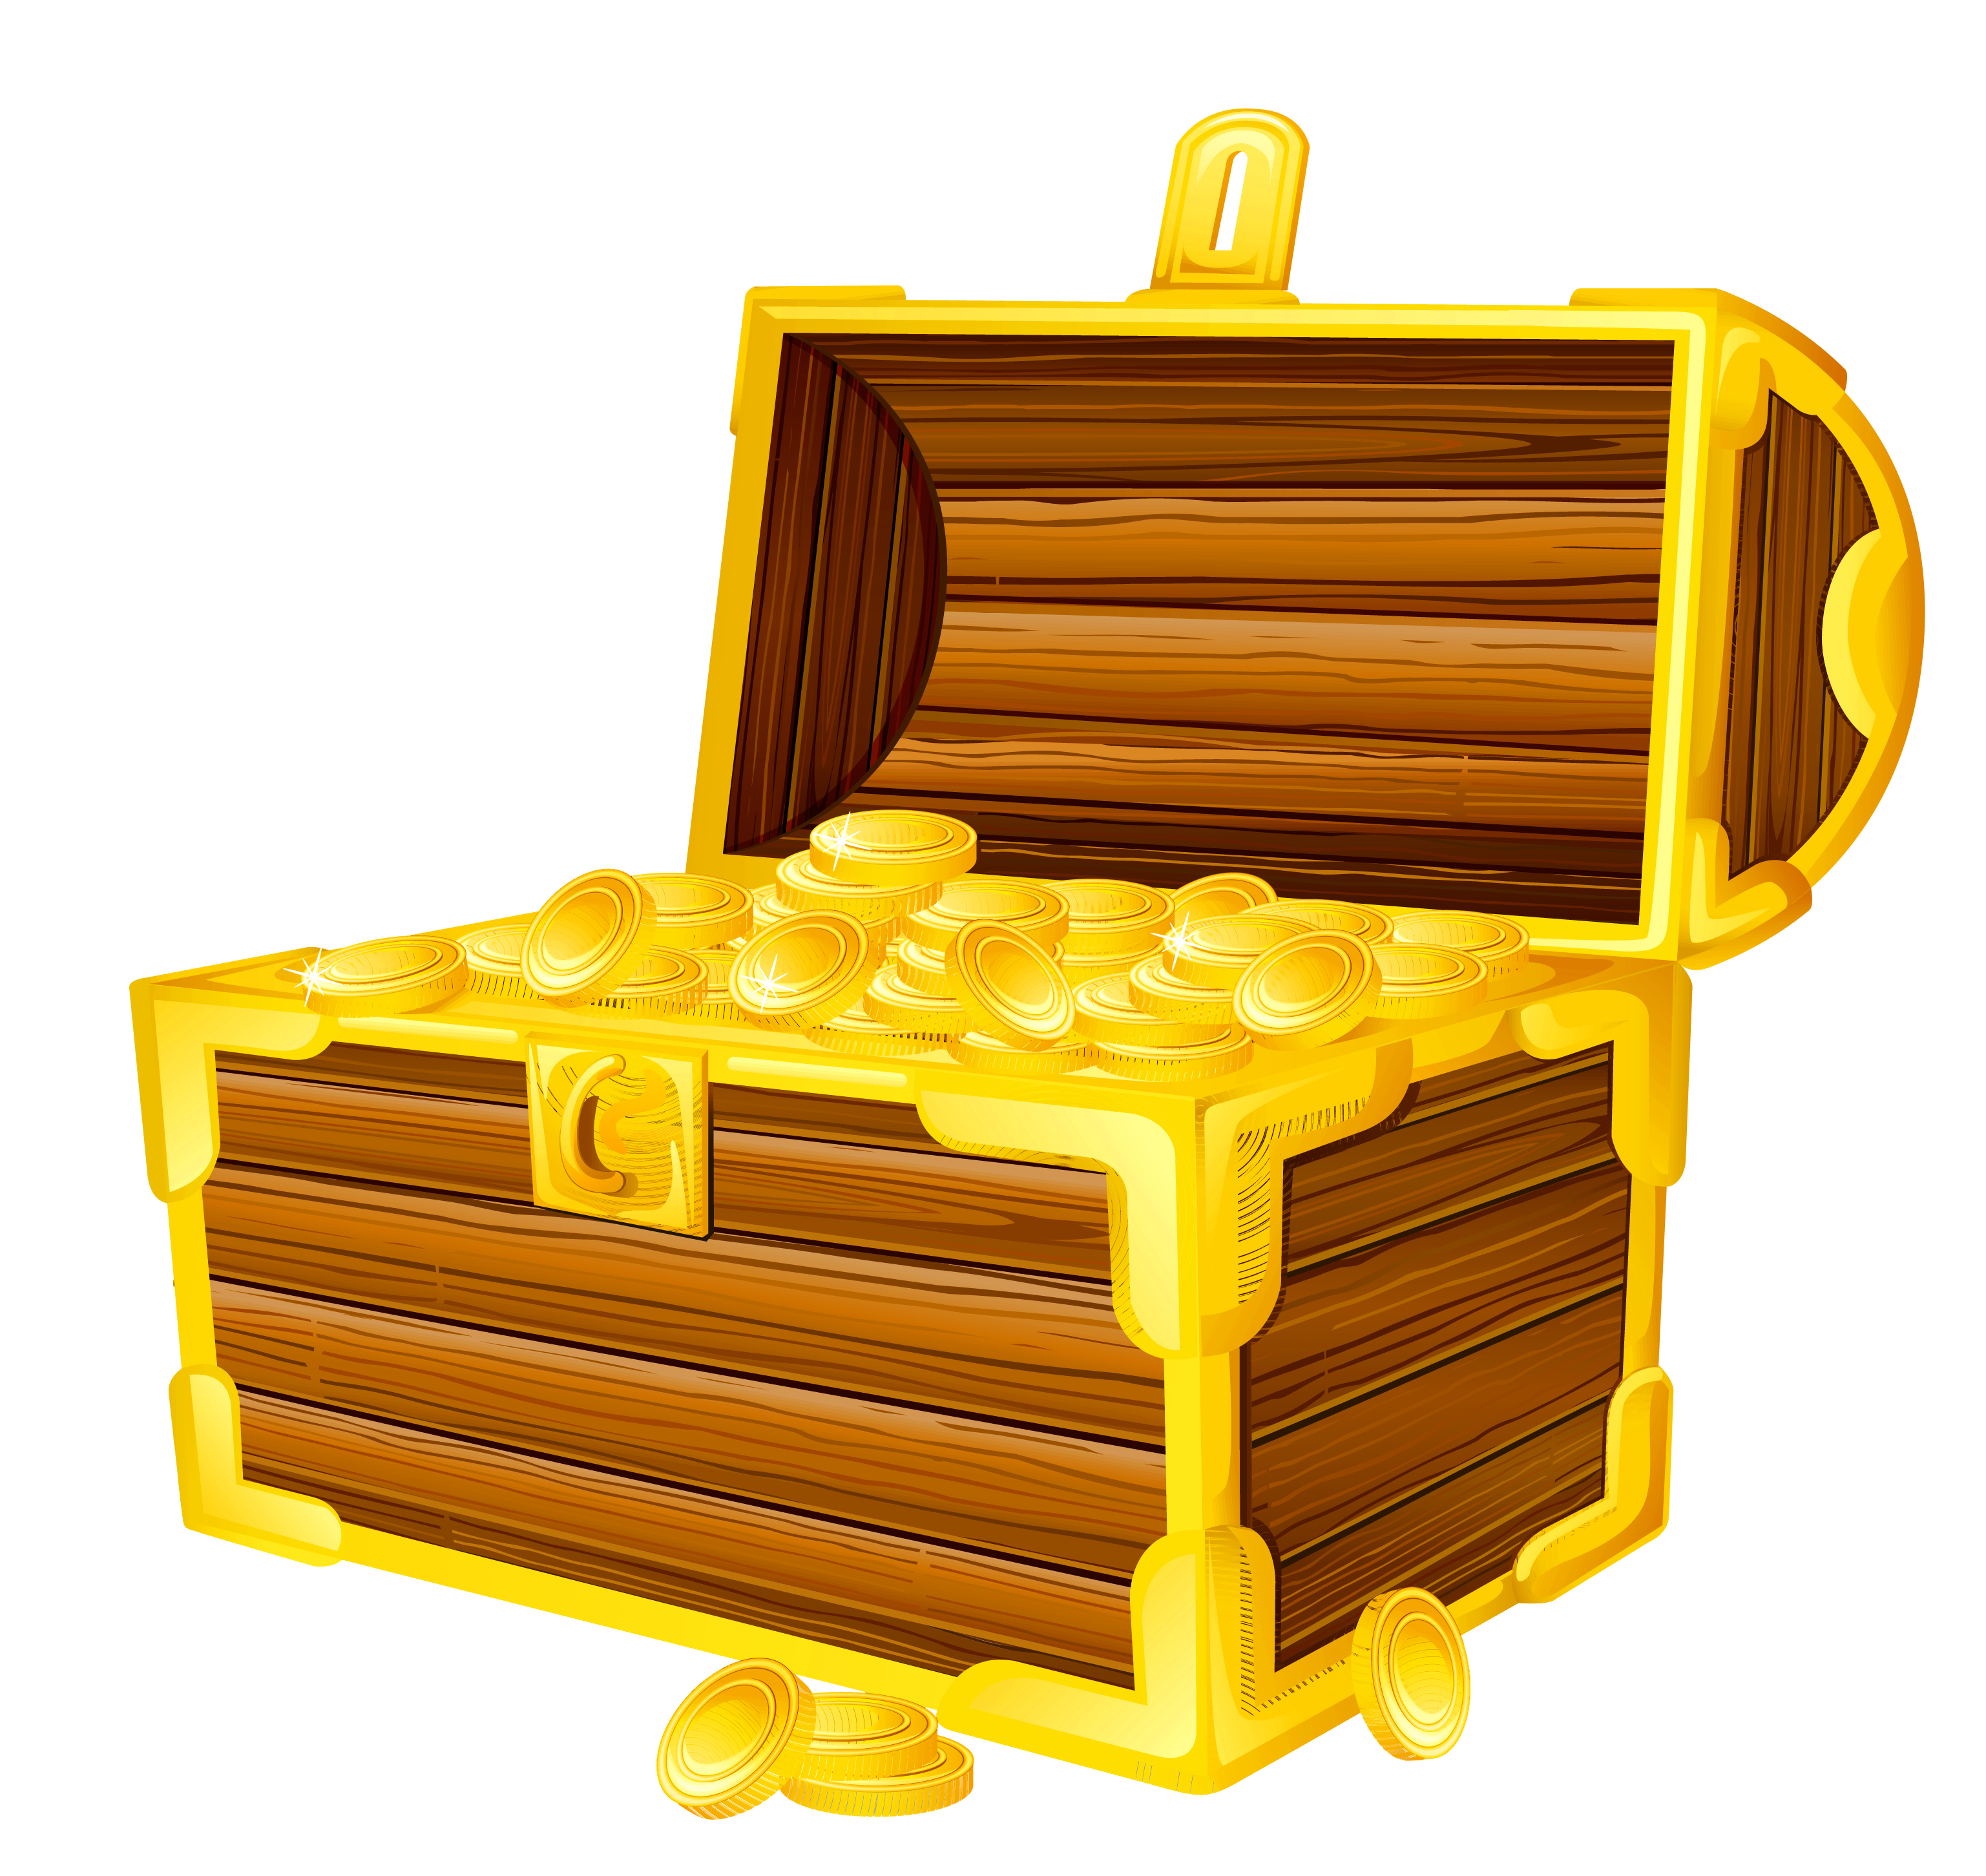 Treasure chest clipart images clipartfest